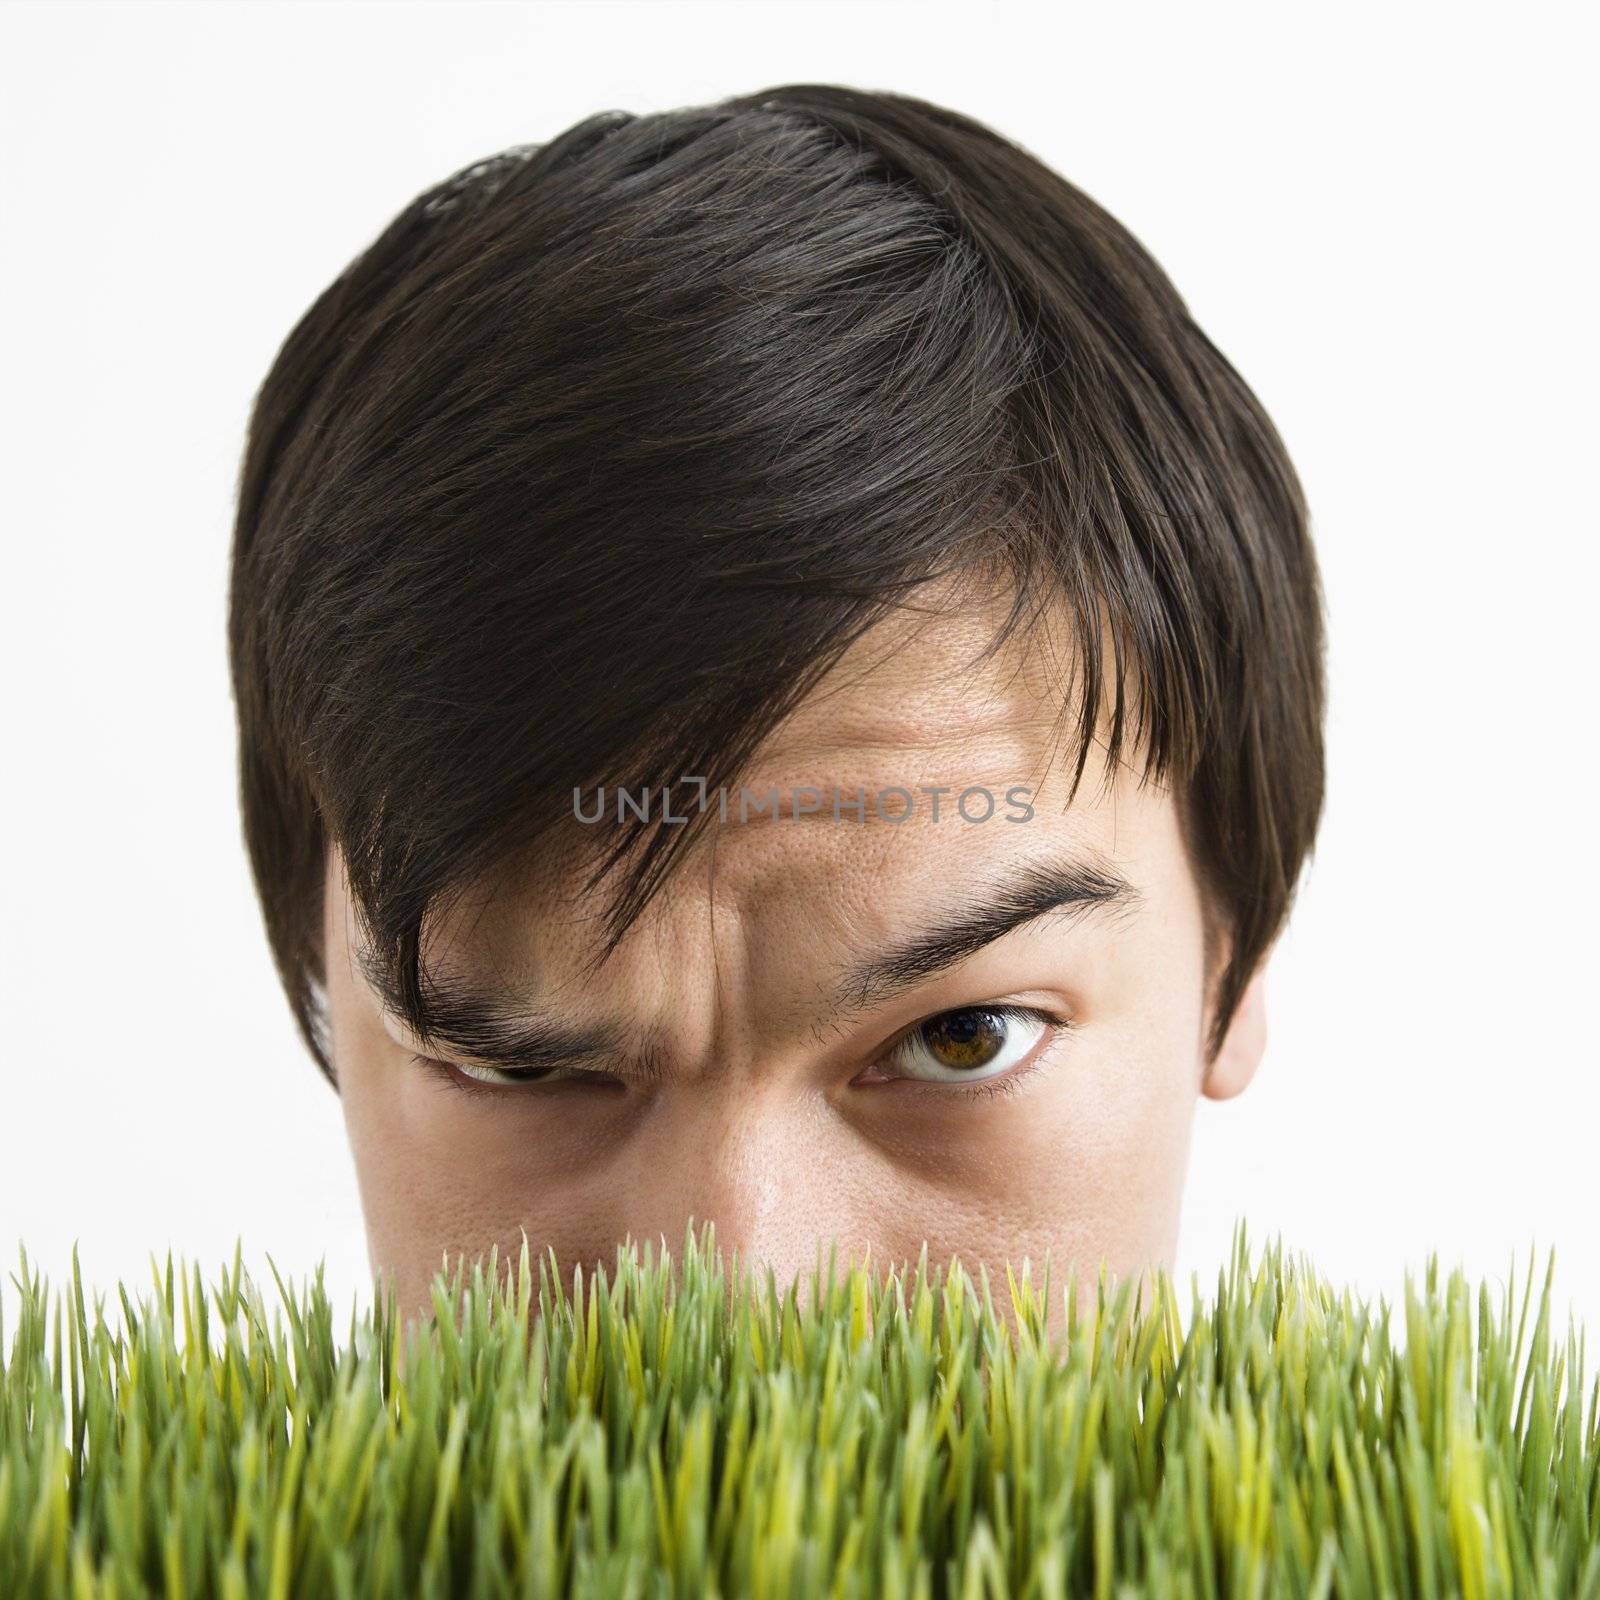 Suspicious man behind grass. by iofoto